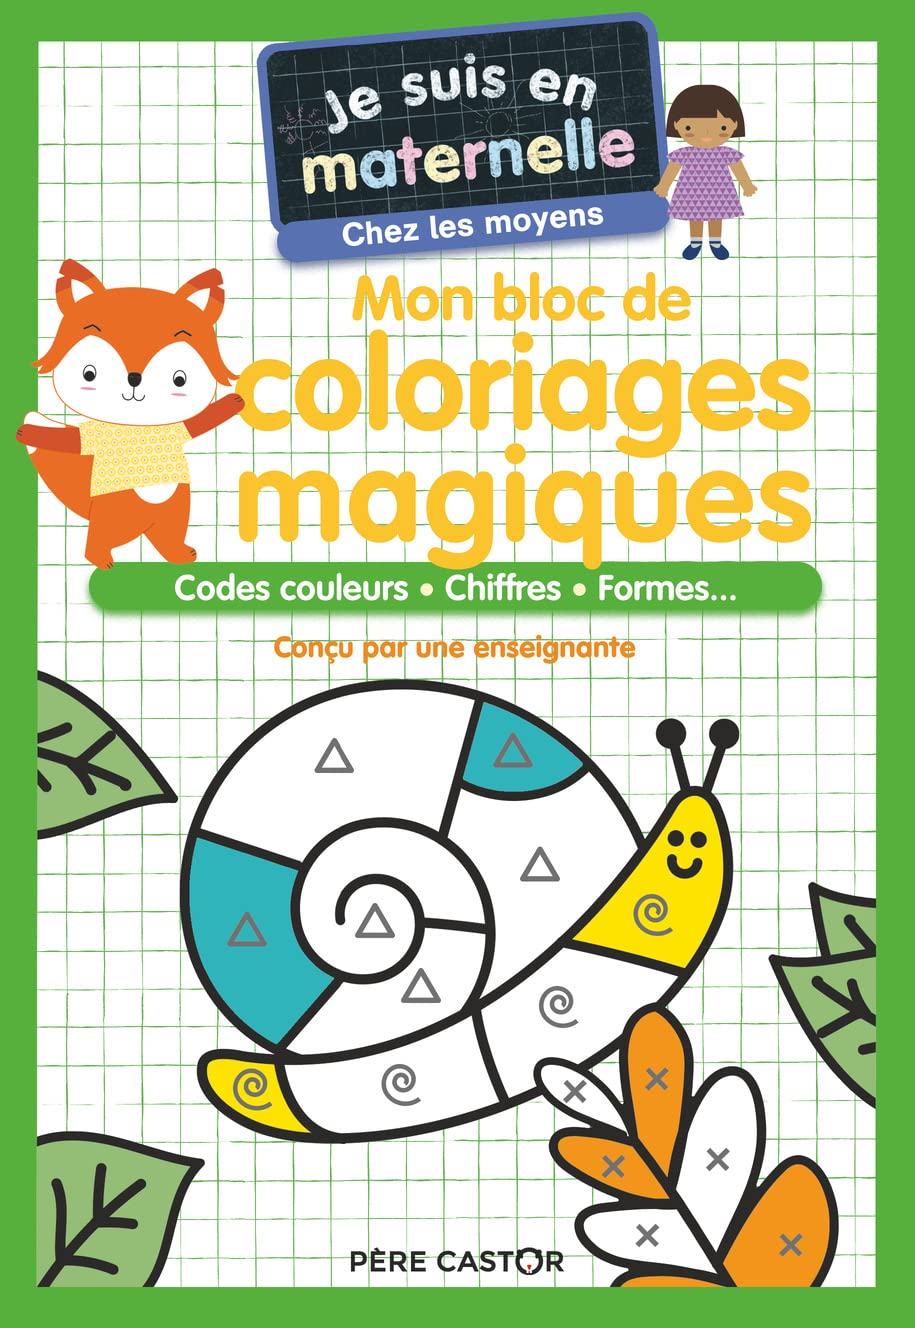 Mon bloc de coloriages magiques, chez les moyens : codes couleurs, chiffres, formes...